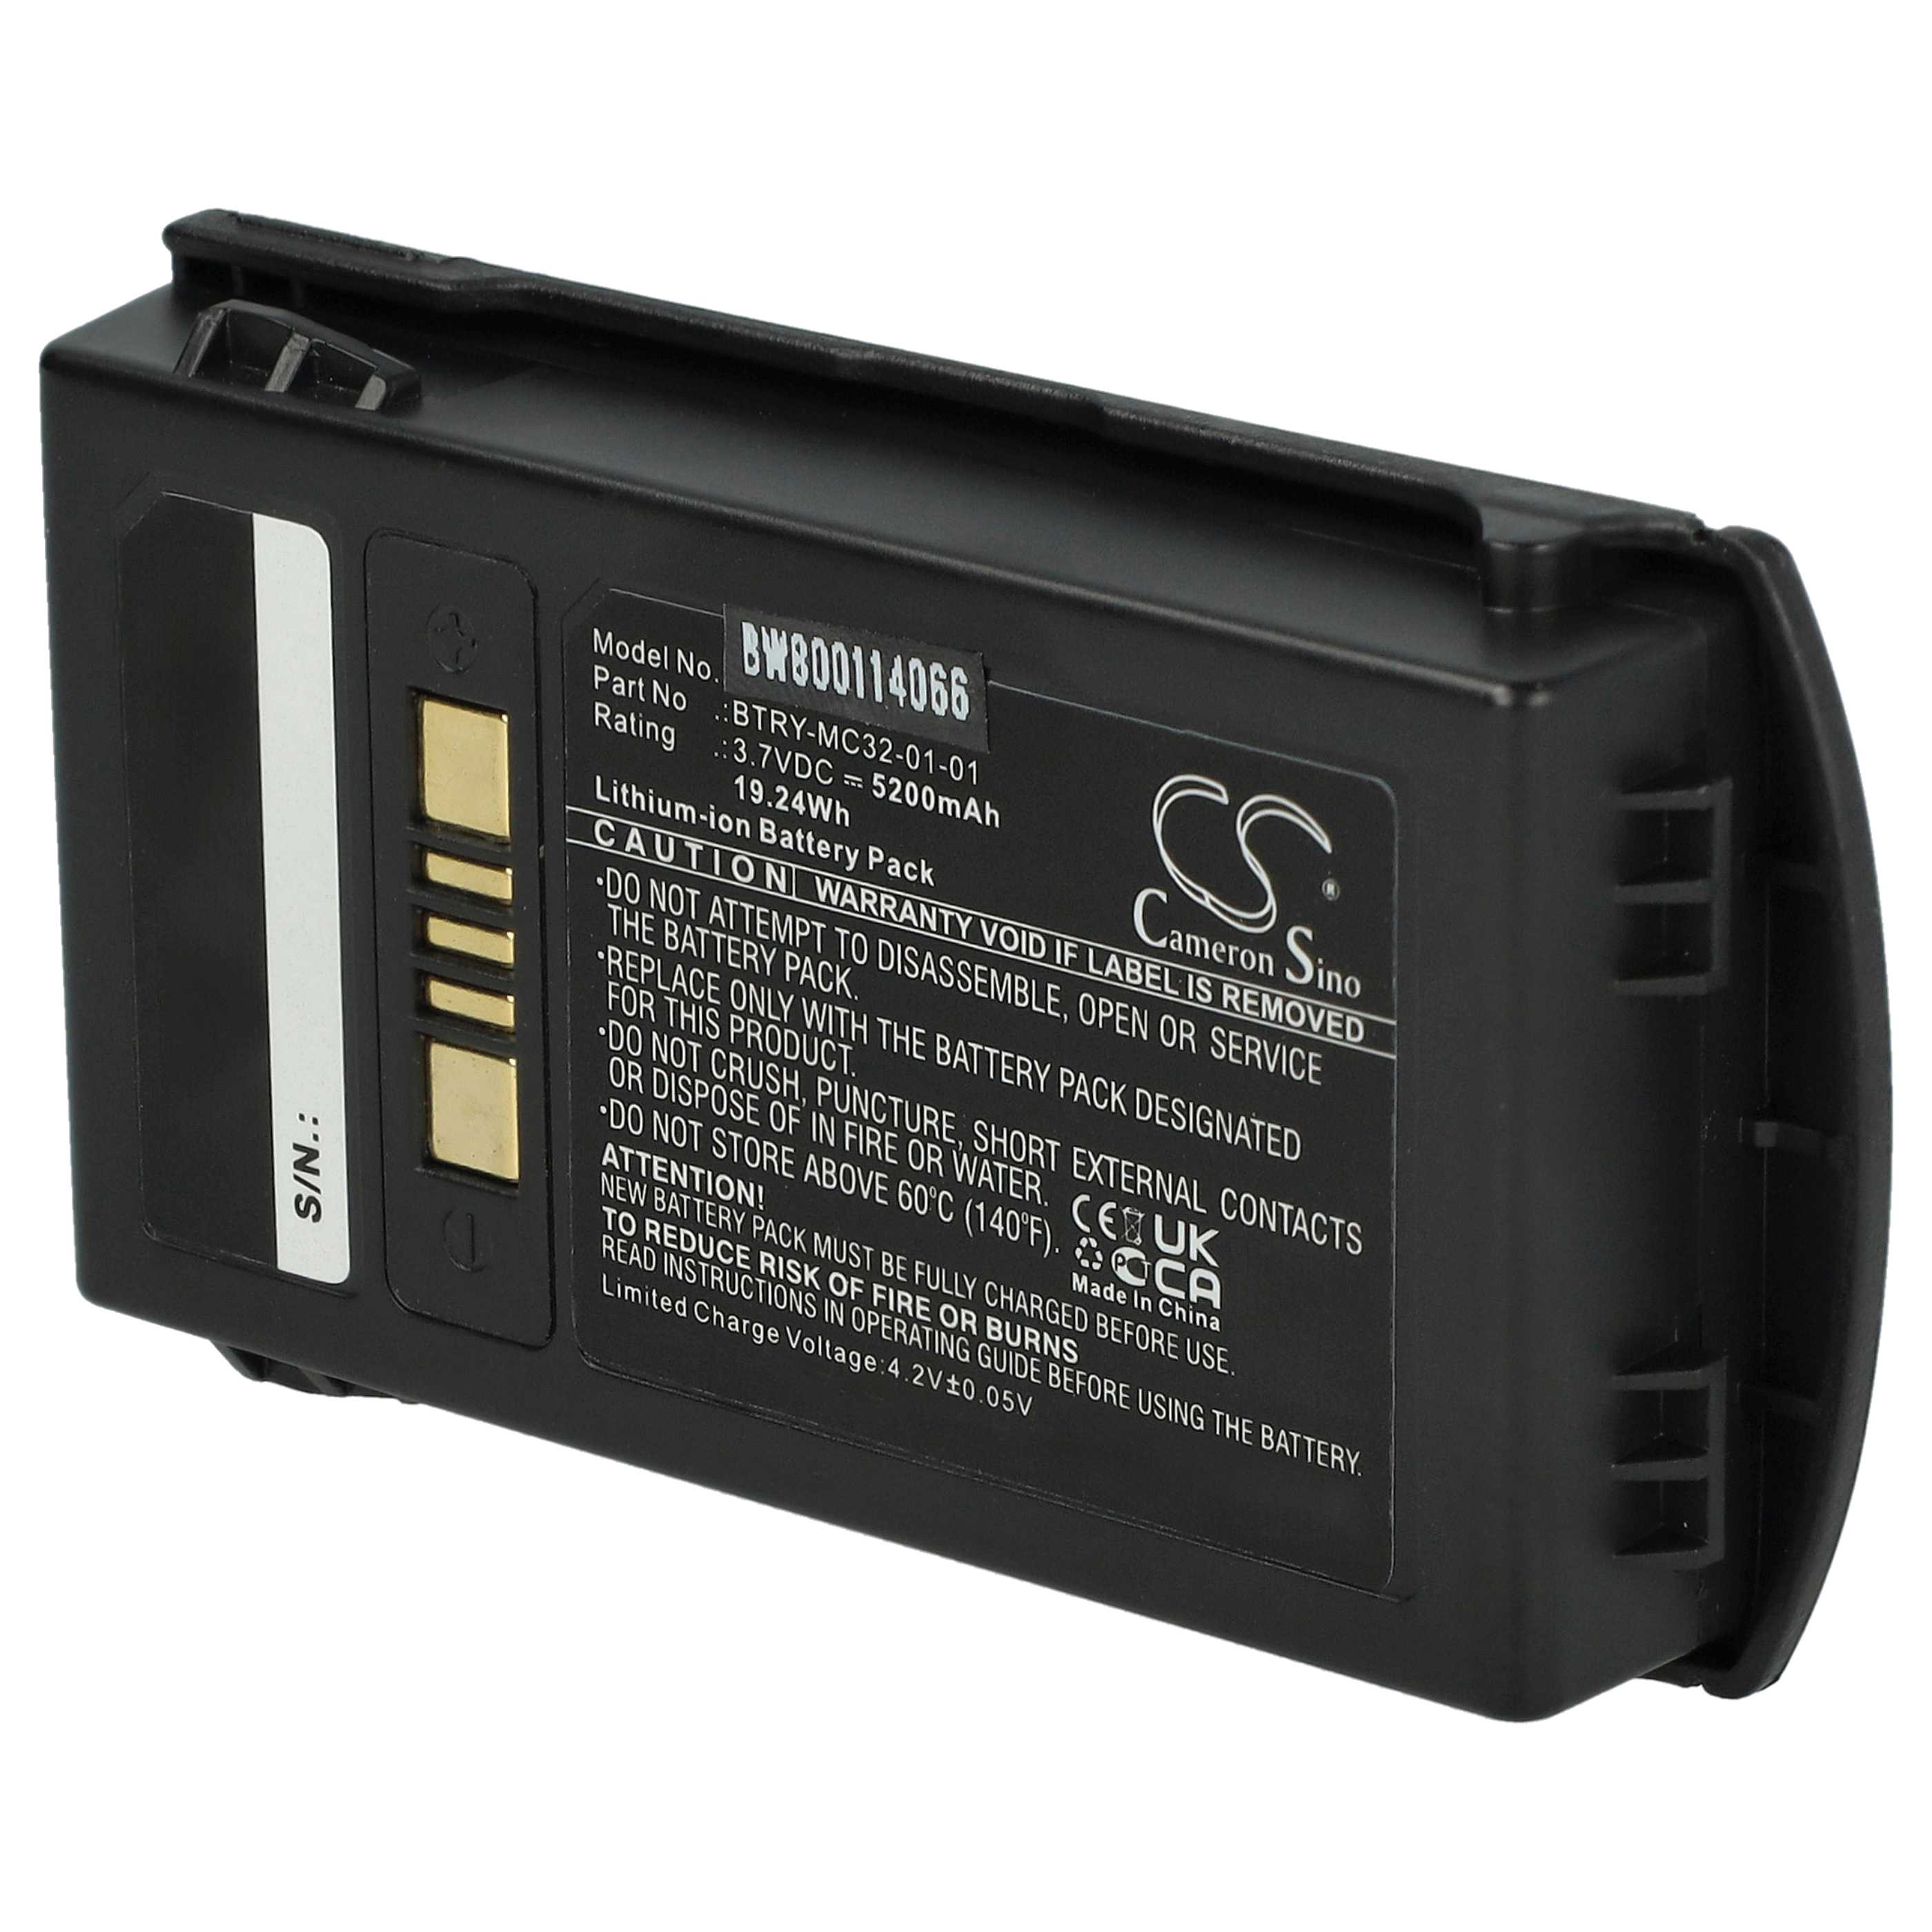 Batería reemplaza Motorola BTRY-MC32-01-01 para escáner de código de barras Motorola - 5200 mAh 3,7 V Li-Ion